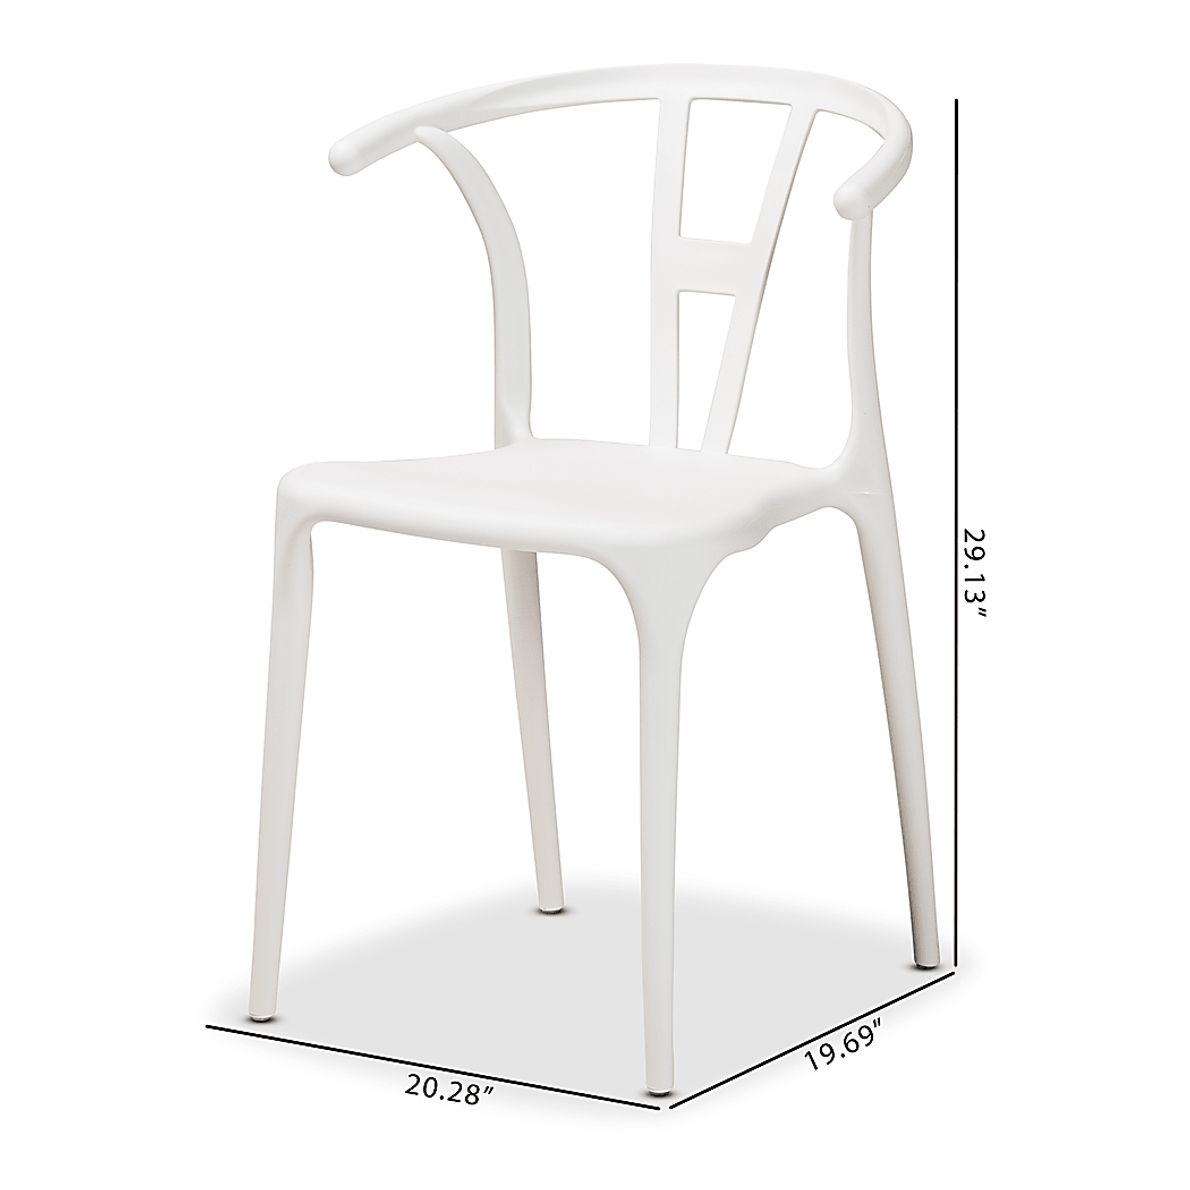 Valverde White Arm Chair Set of 4